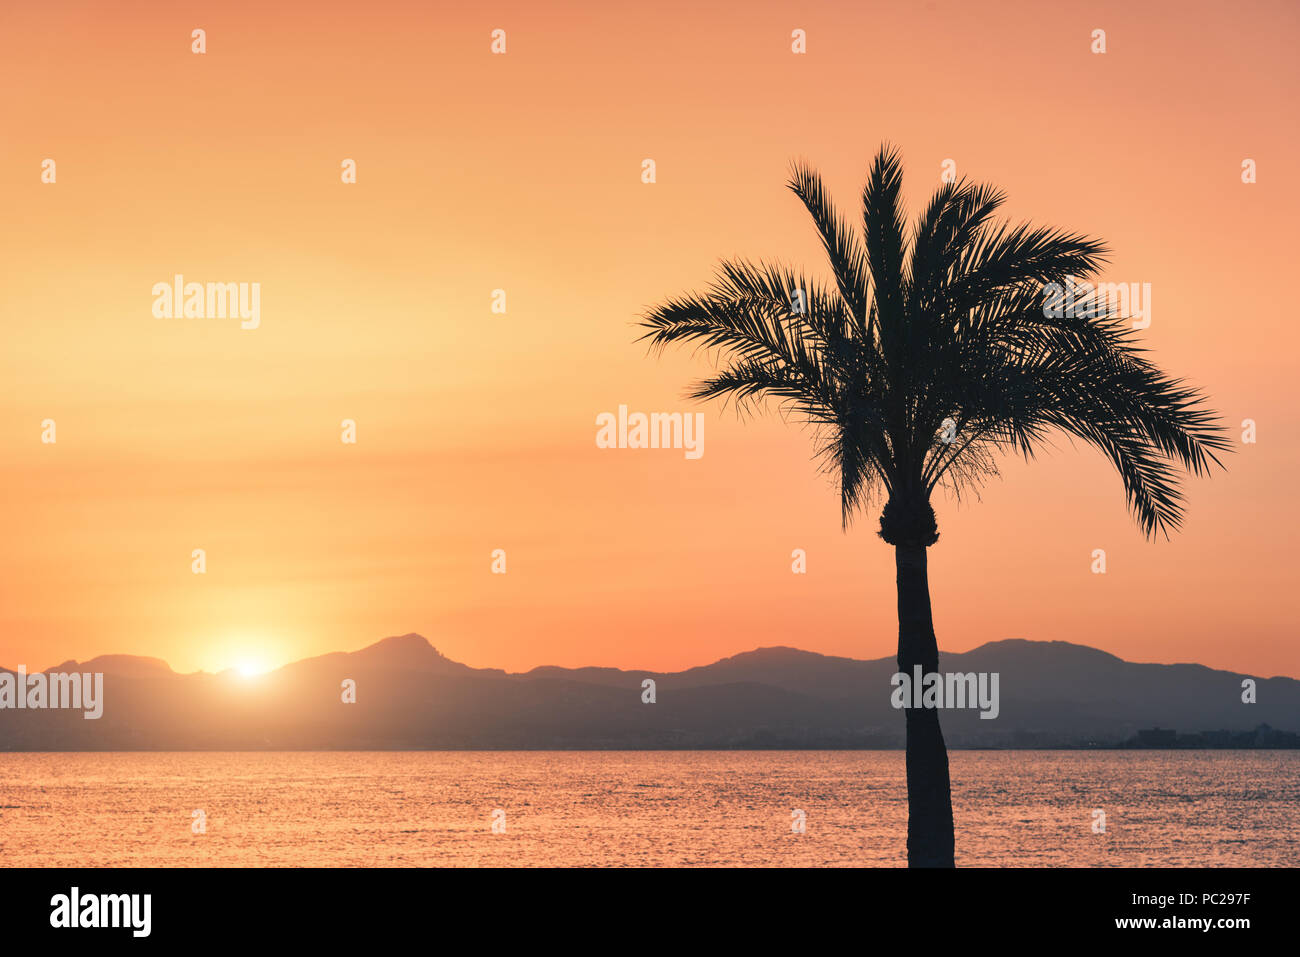 Silhouettes de palmiers contre ciel coloré au coucher du soleil. Tropical avec palmiers sur la plage de sable, mer, l'or du soleil dans la soirée en été Banque D'Images